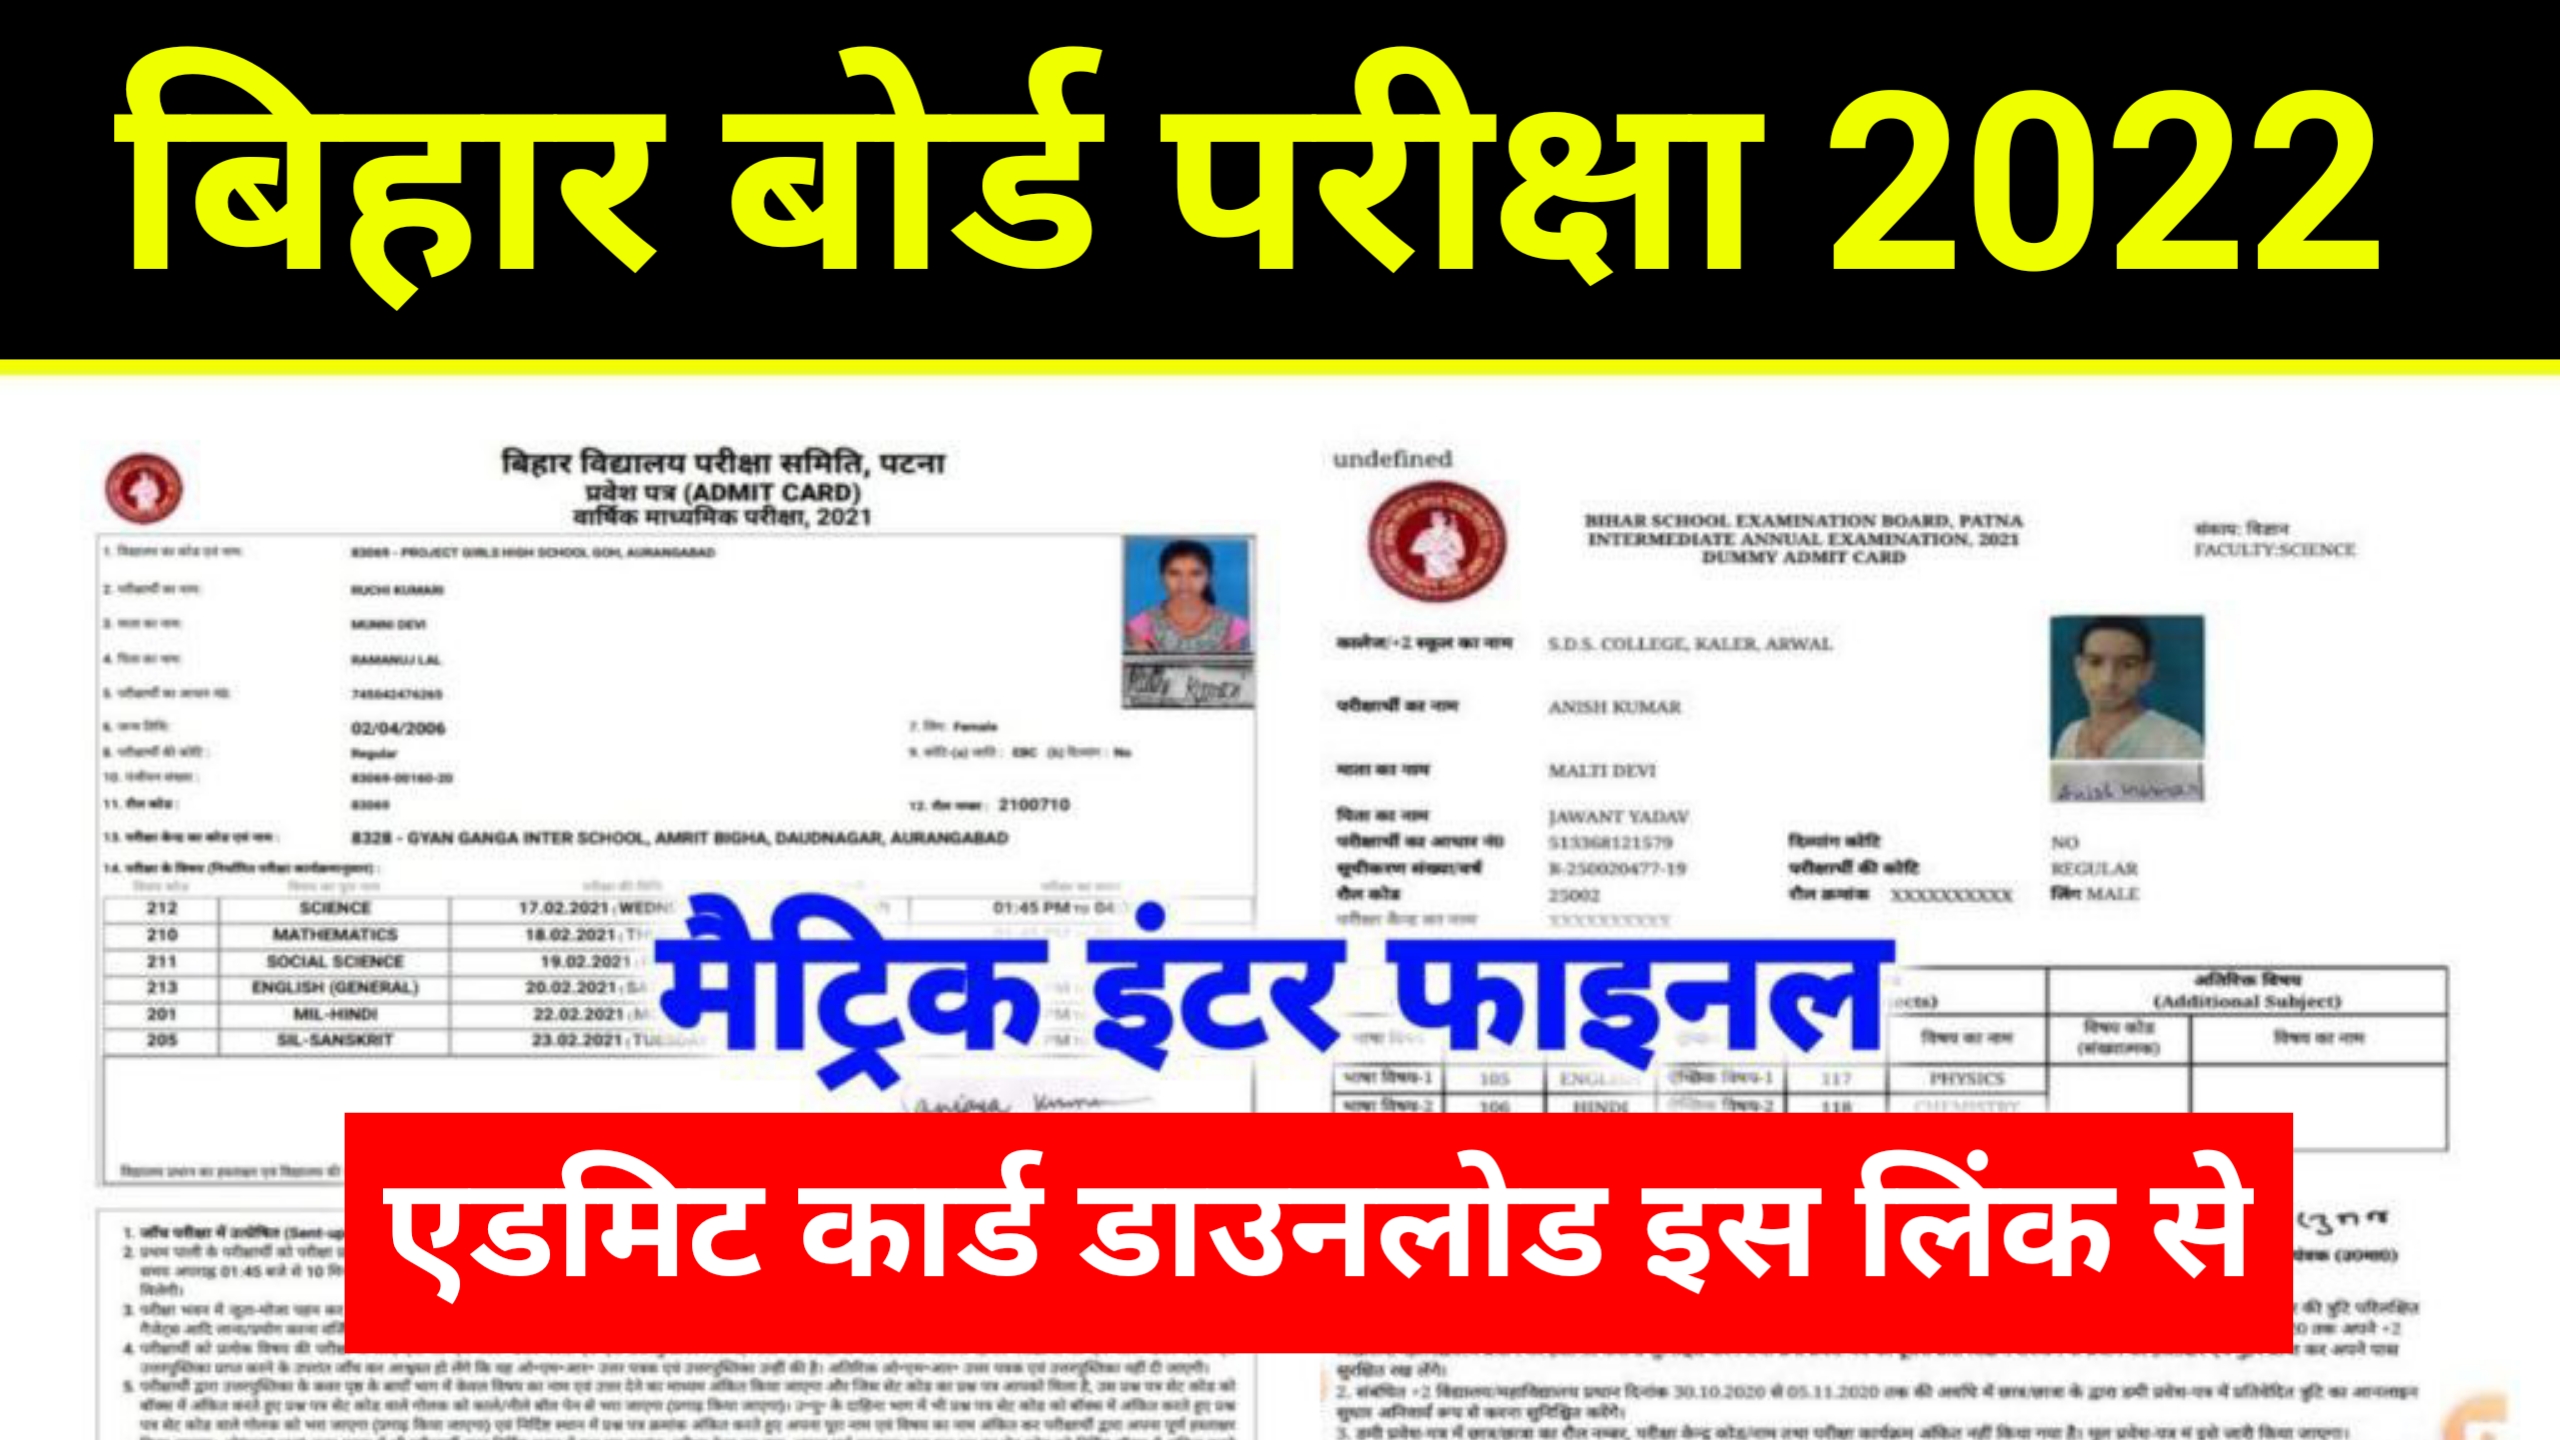 Bihar Board Original Admit Card 2022 Download| मैट्रिक–इंटर सभी छात्र 2022 का ओरिजिनल Admit Card यहां से करें डाउनलोड!